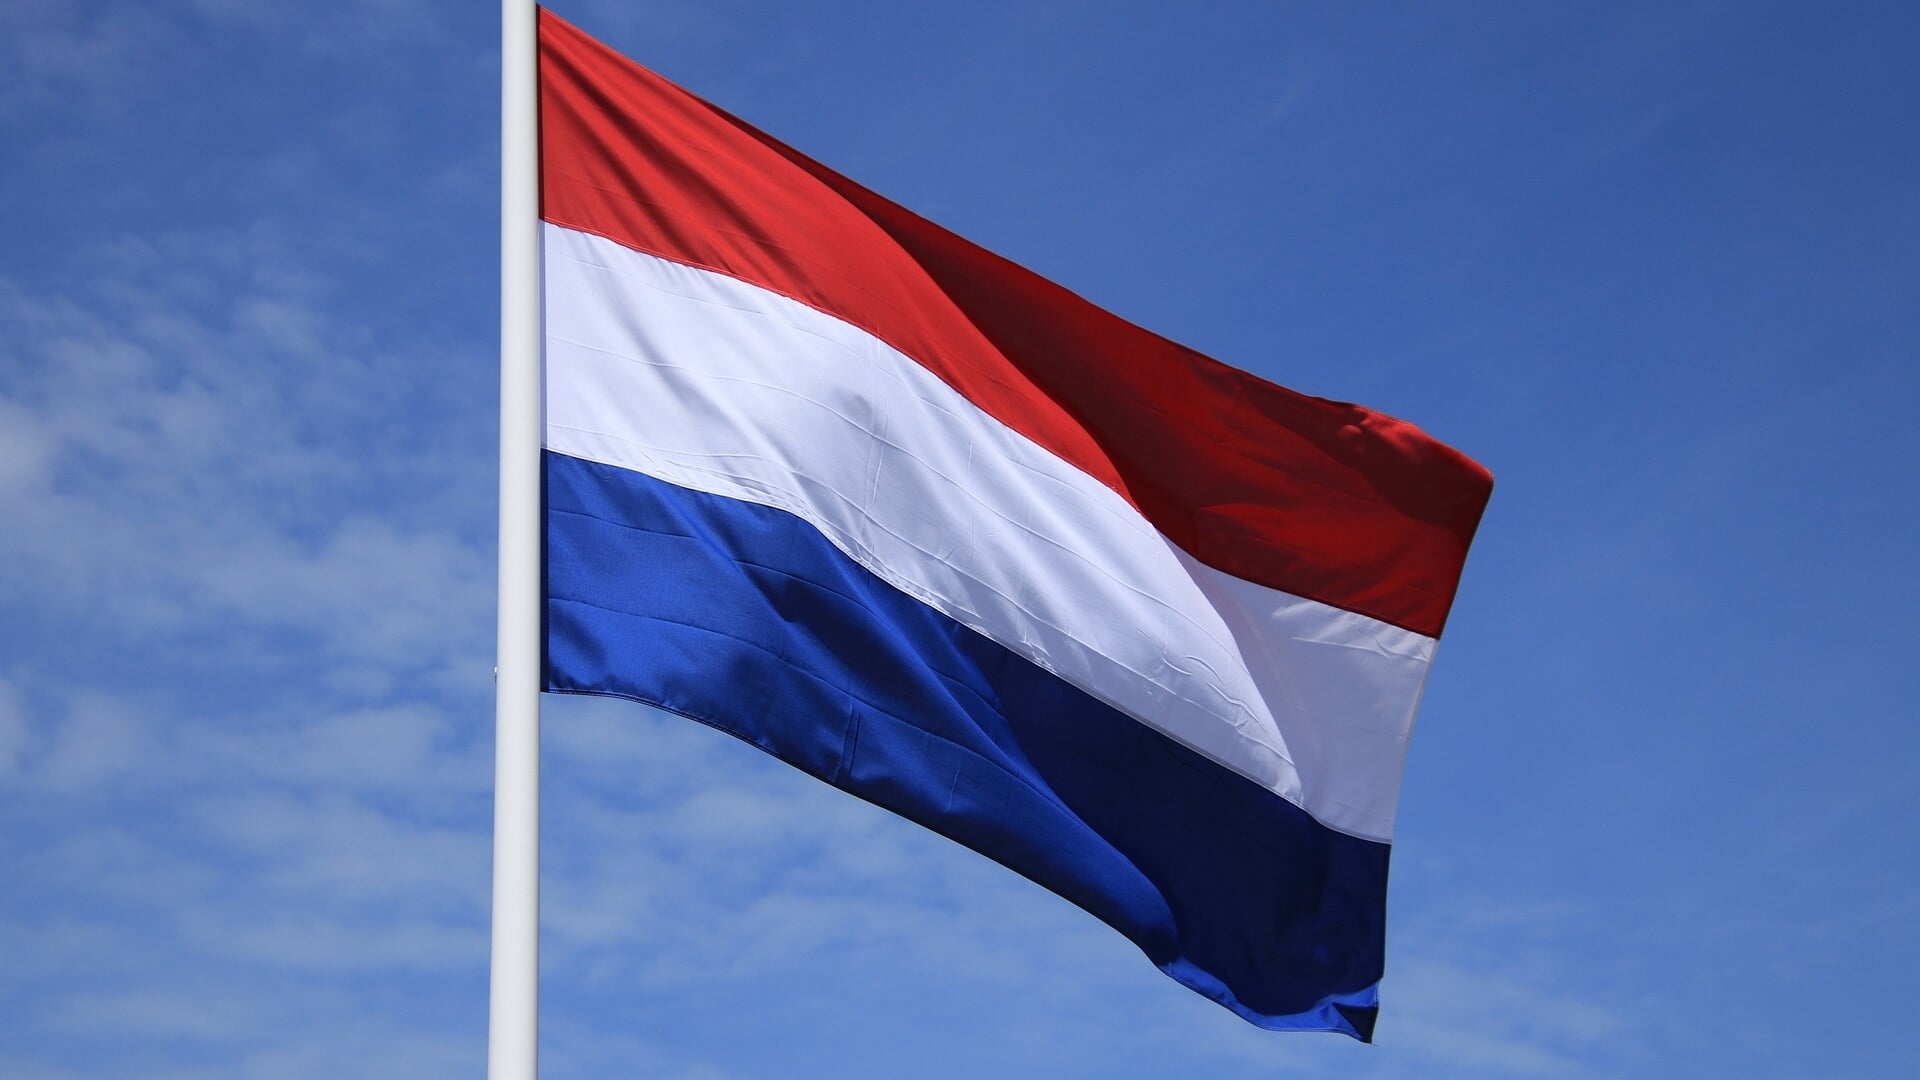 Veel Nederlandse vlaggen die bij boeren uit protest omgekeerd werden opgehangen, wapperen na de overwinning van BBB weer op de normale manier.